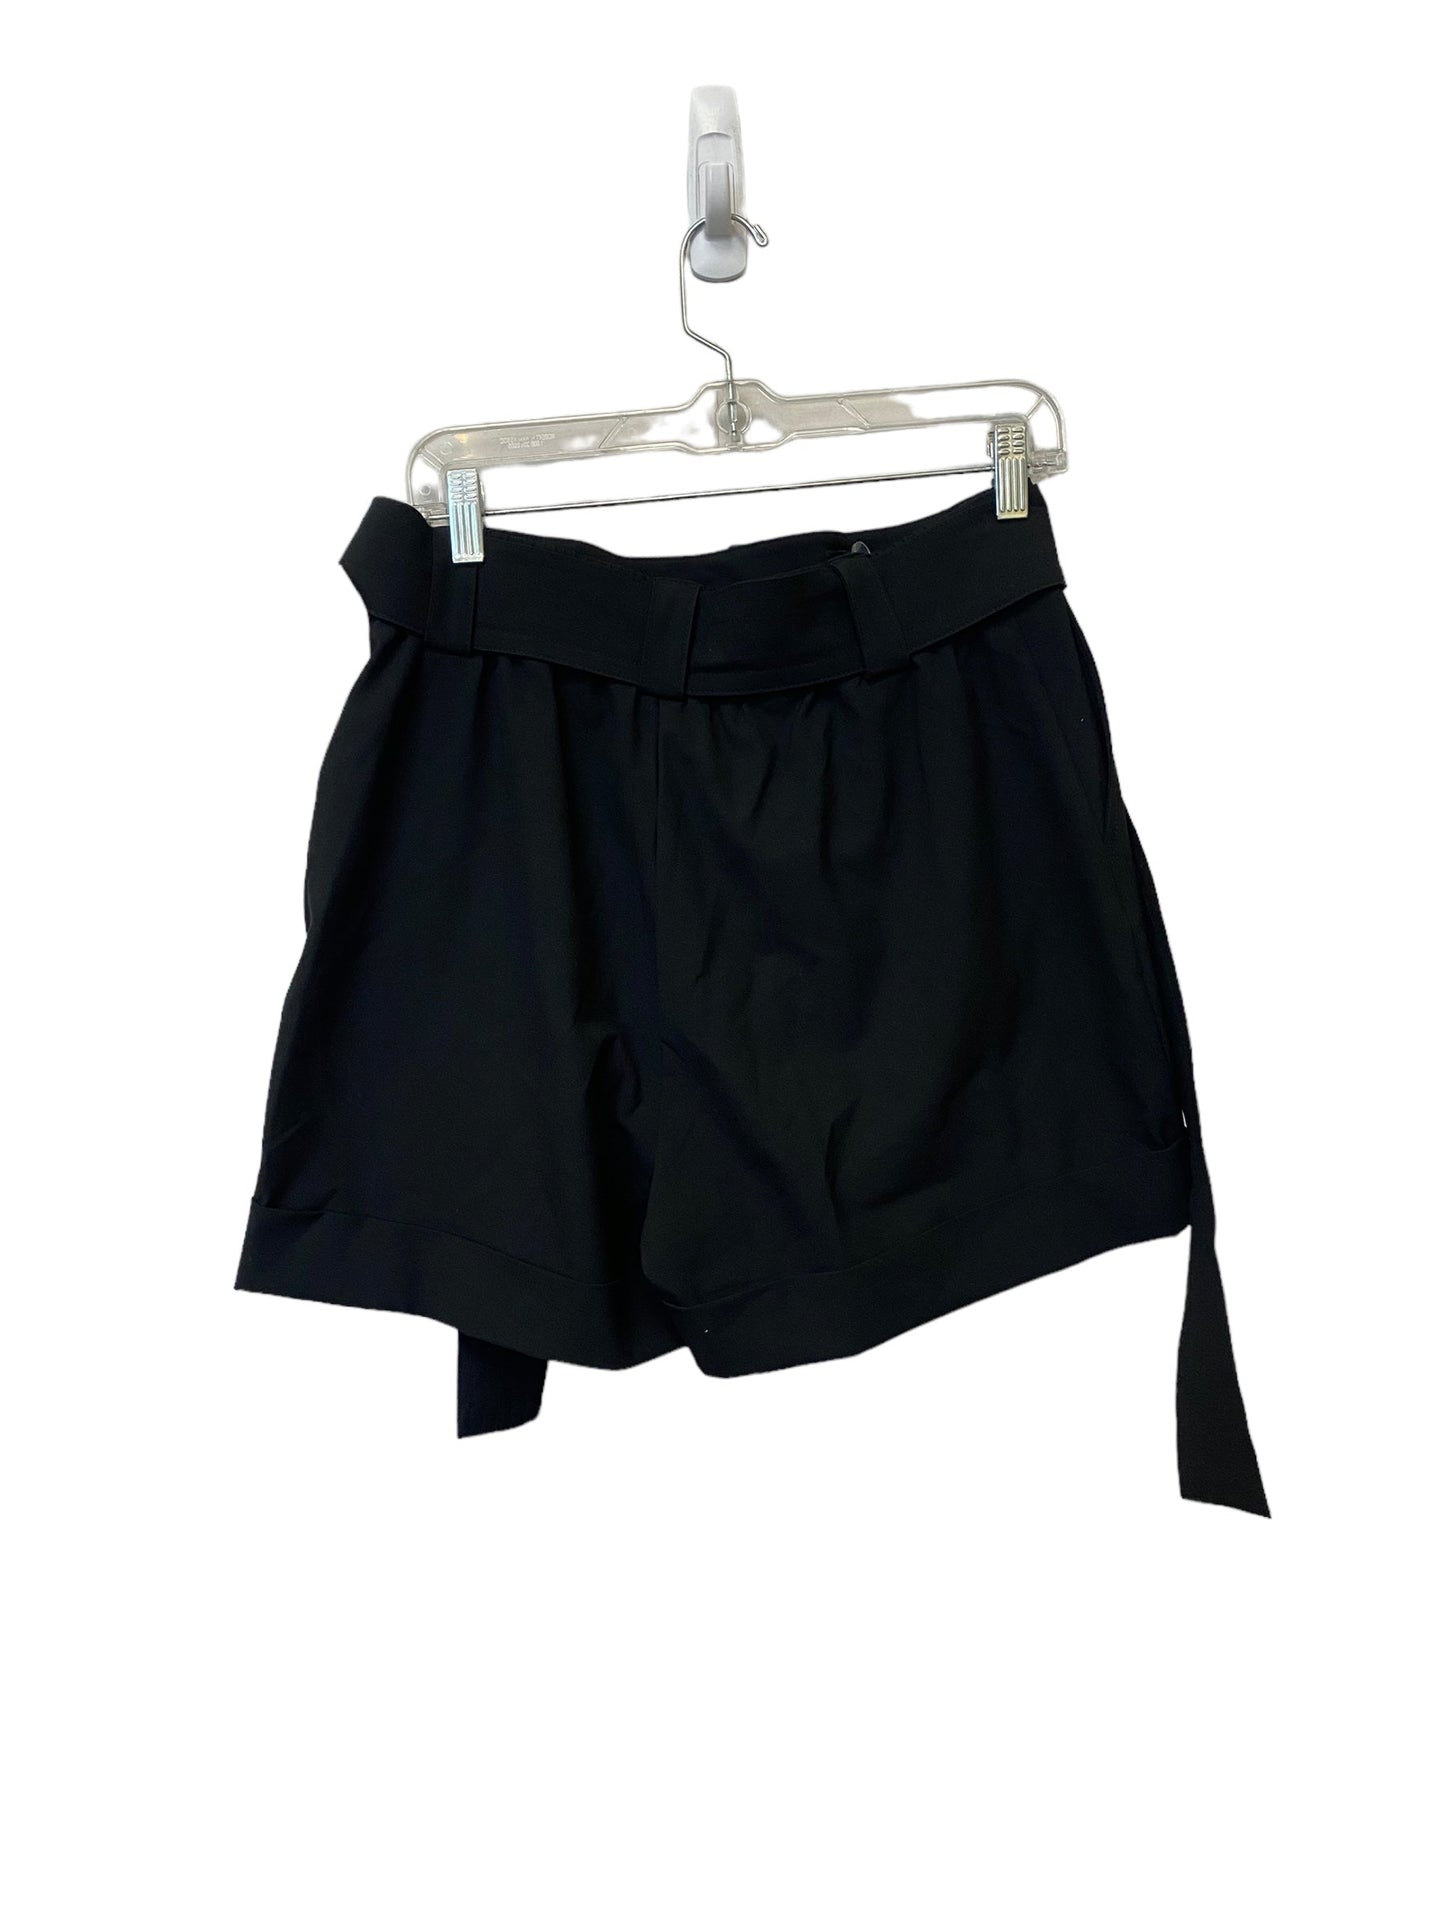 Shorts By Rachel Zoe  Size: 8